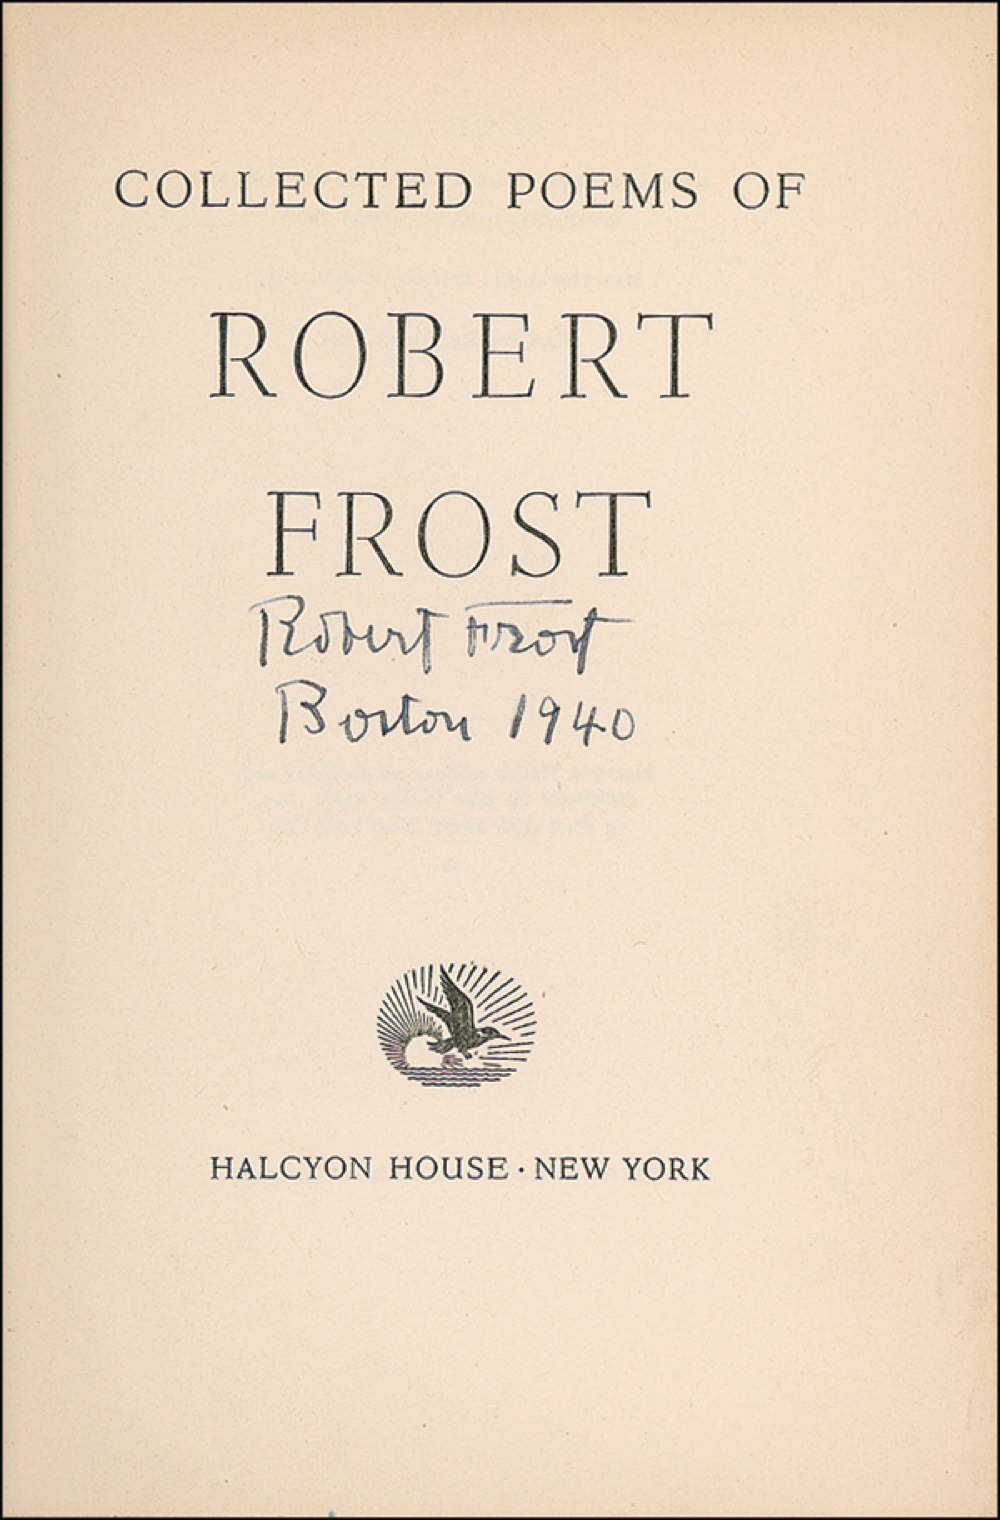 Lot #489 Robert Frost